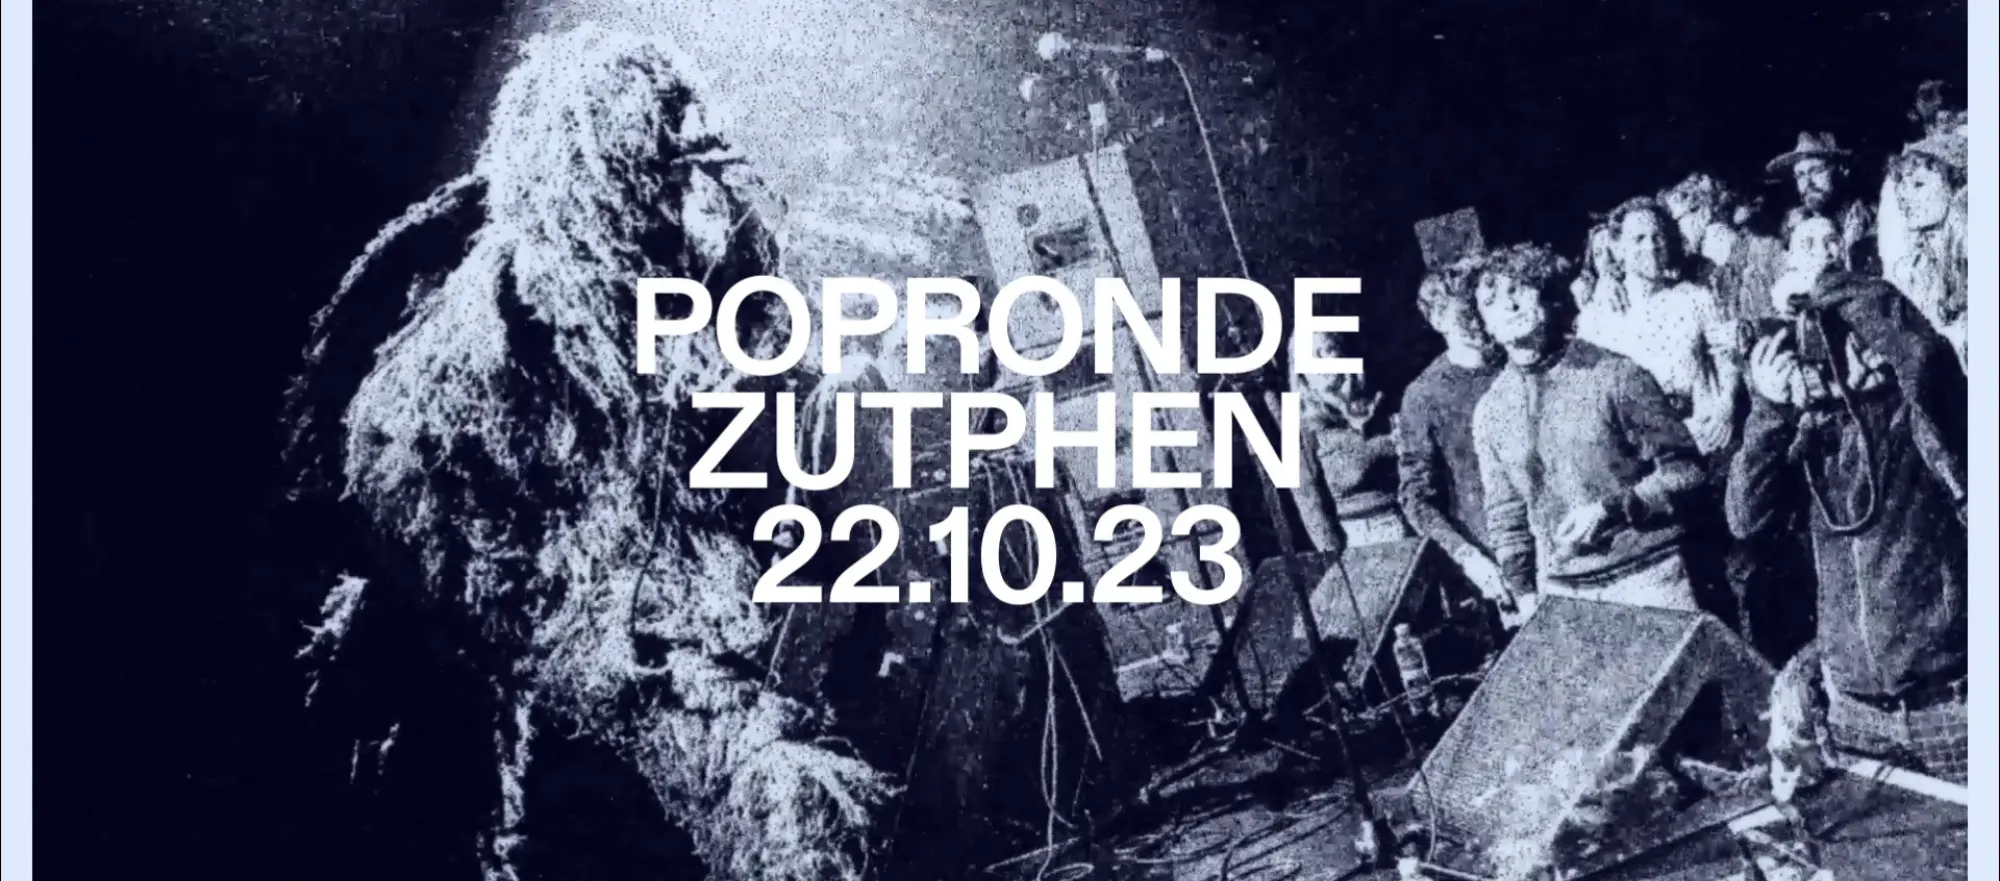 Popronde Zutphen 2023